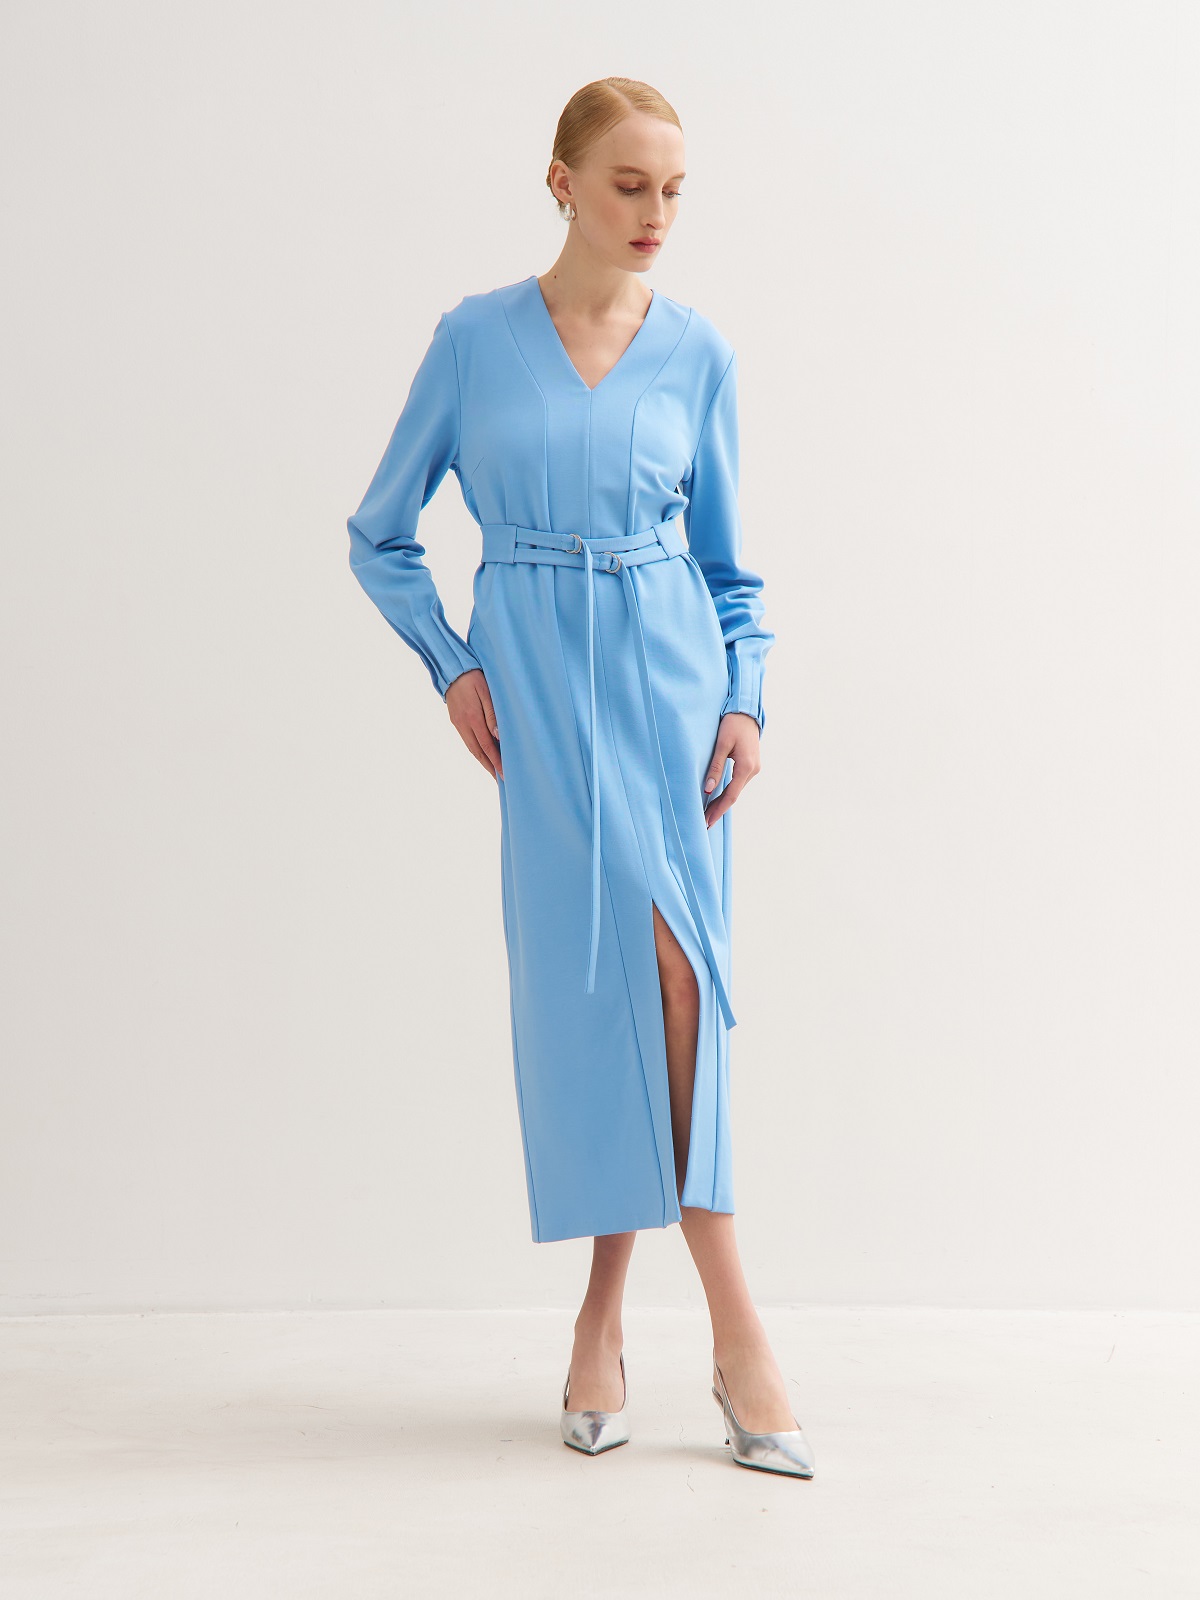 Голубое платье с поясом на кольцах